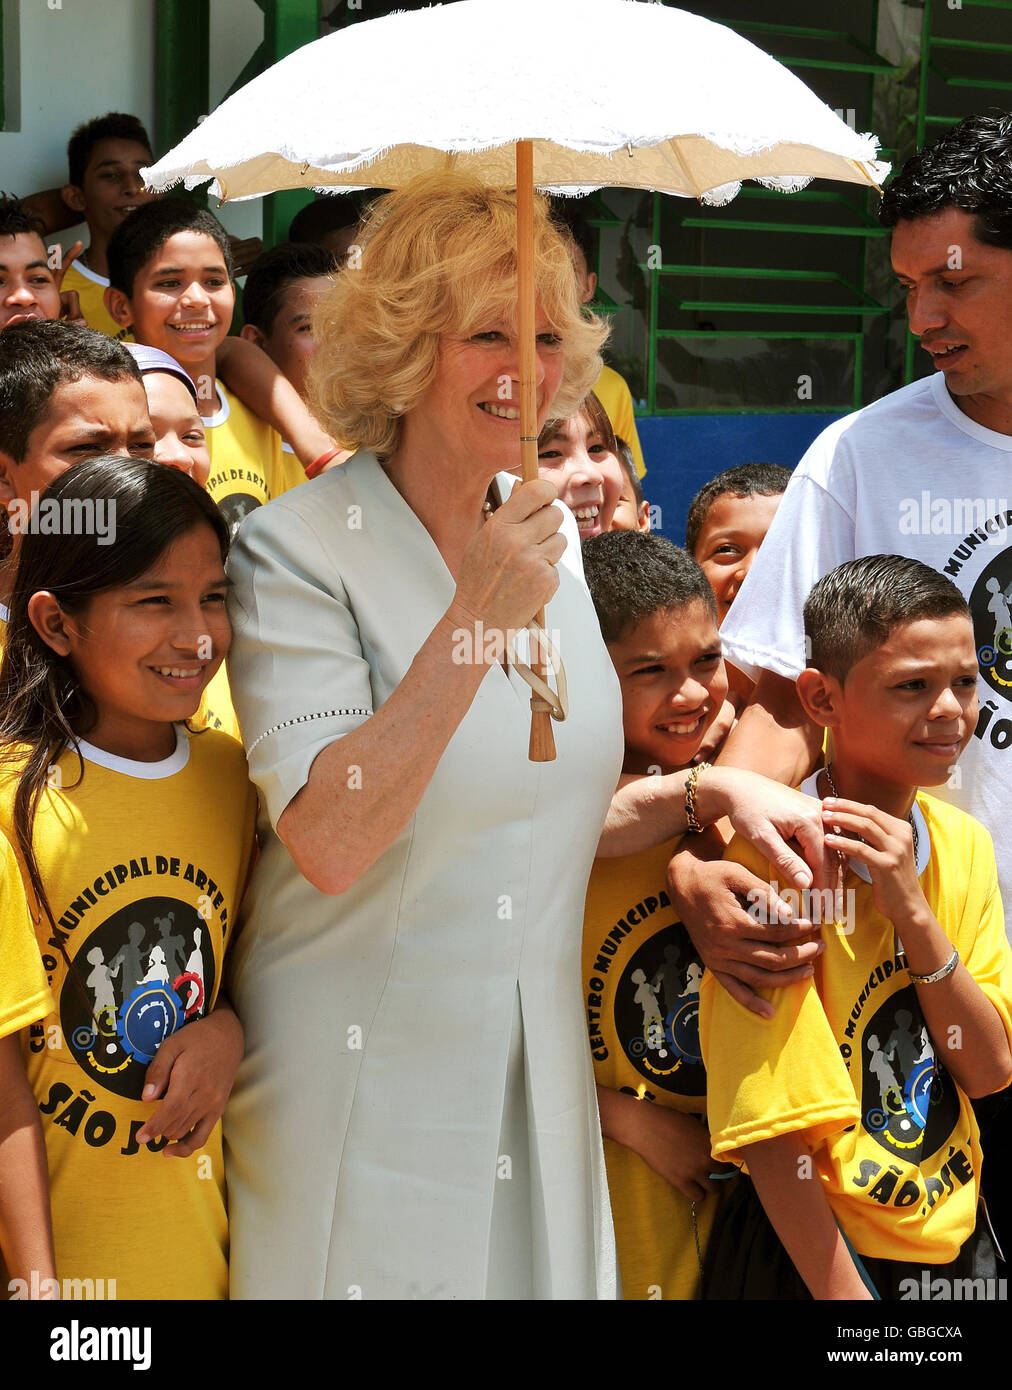 La duchesse de Cornouailles tient la main d'un garçon lors d'une séance de photo, dans un centre communautaire de Manaus, dans le centre du Brésil, cet après-midi. Banque D'Images